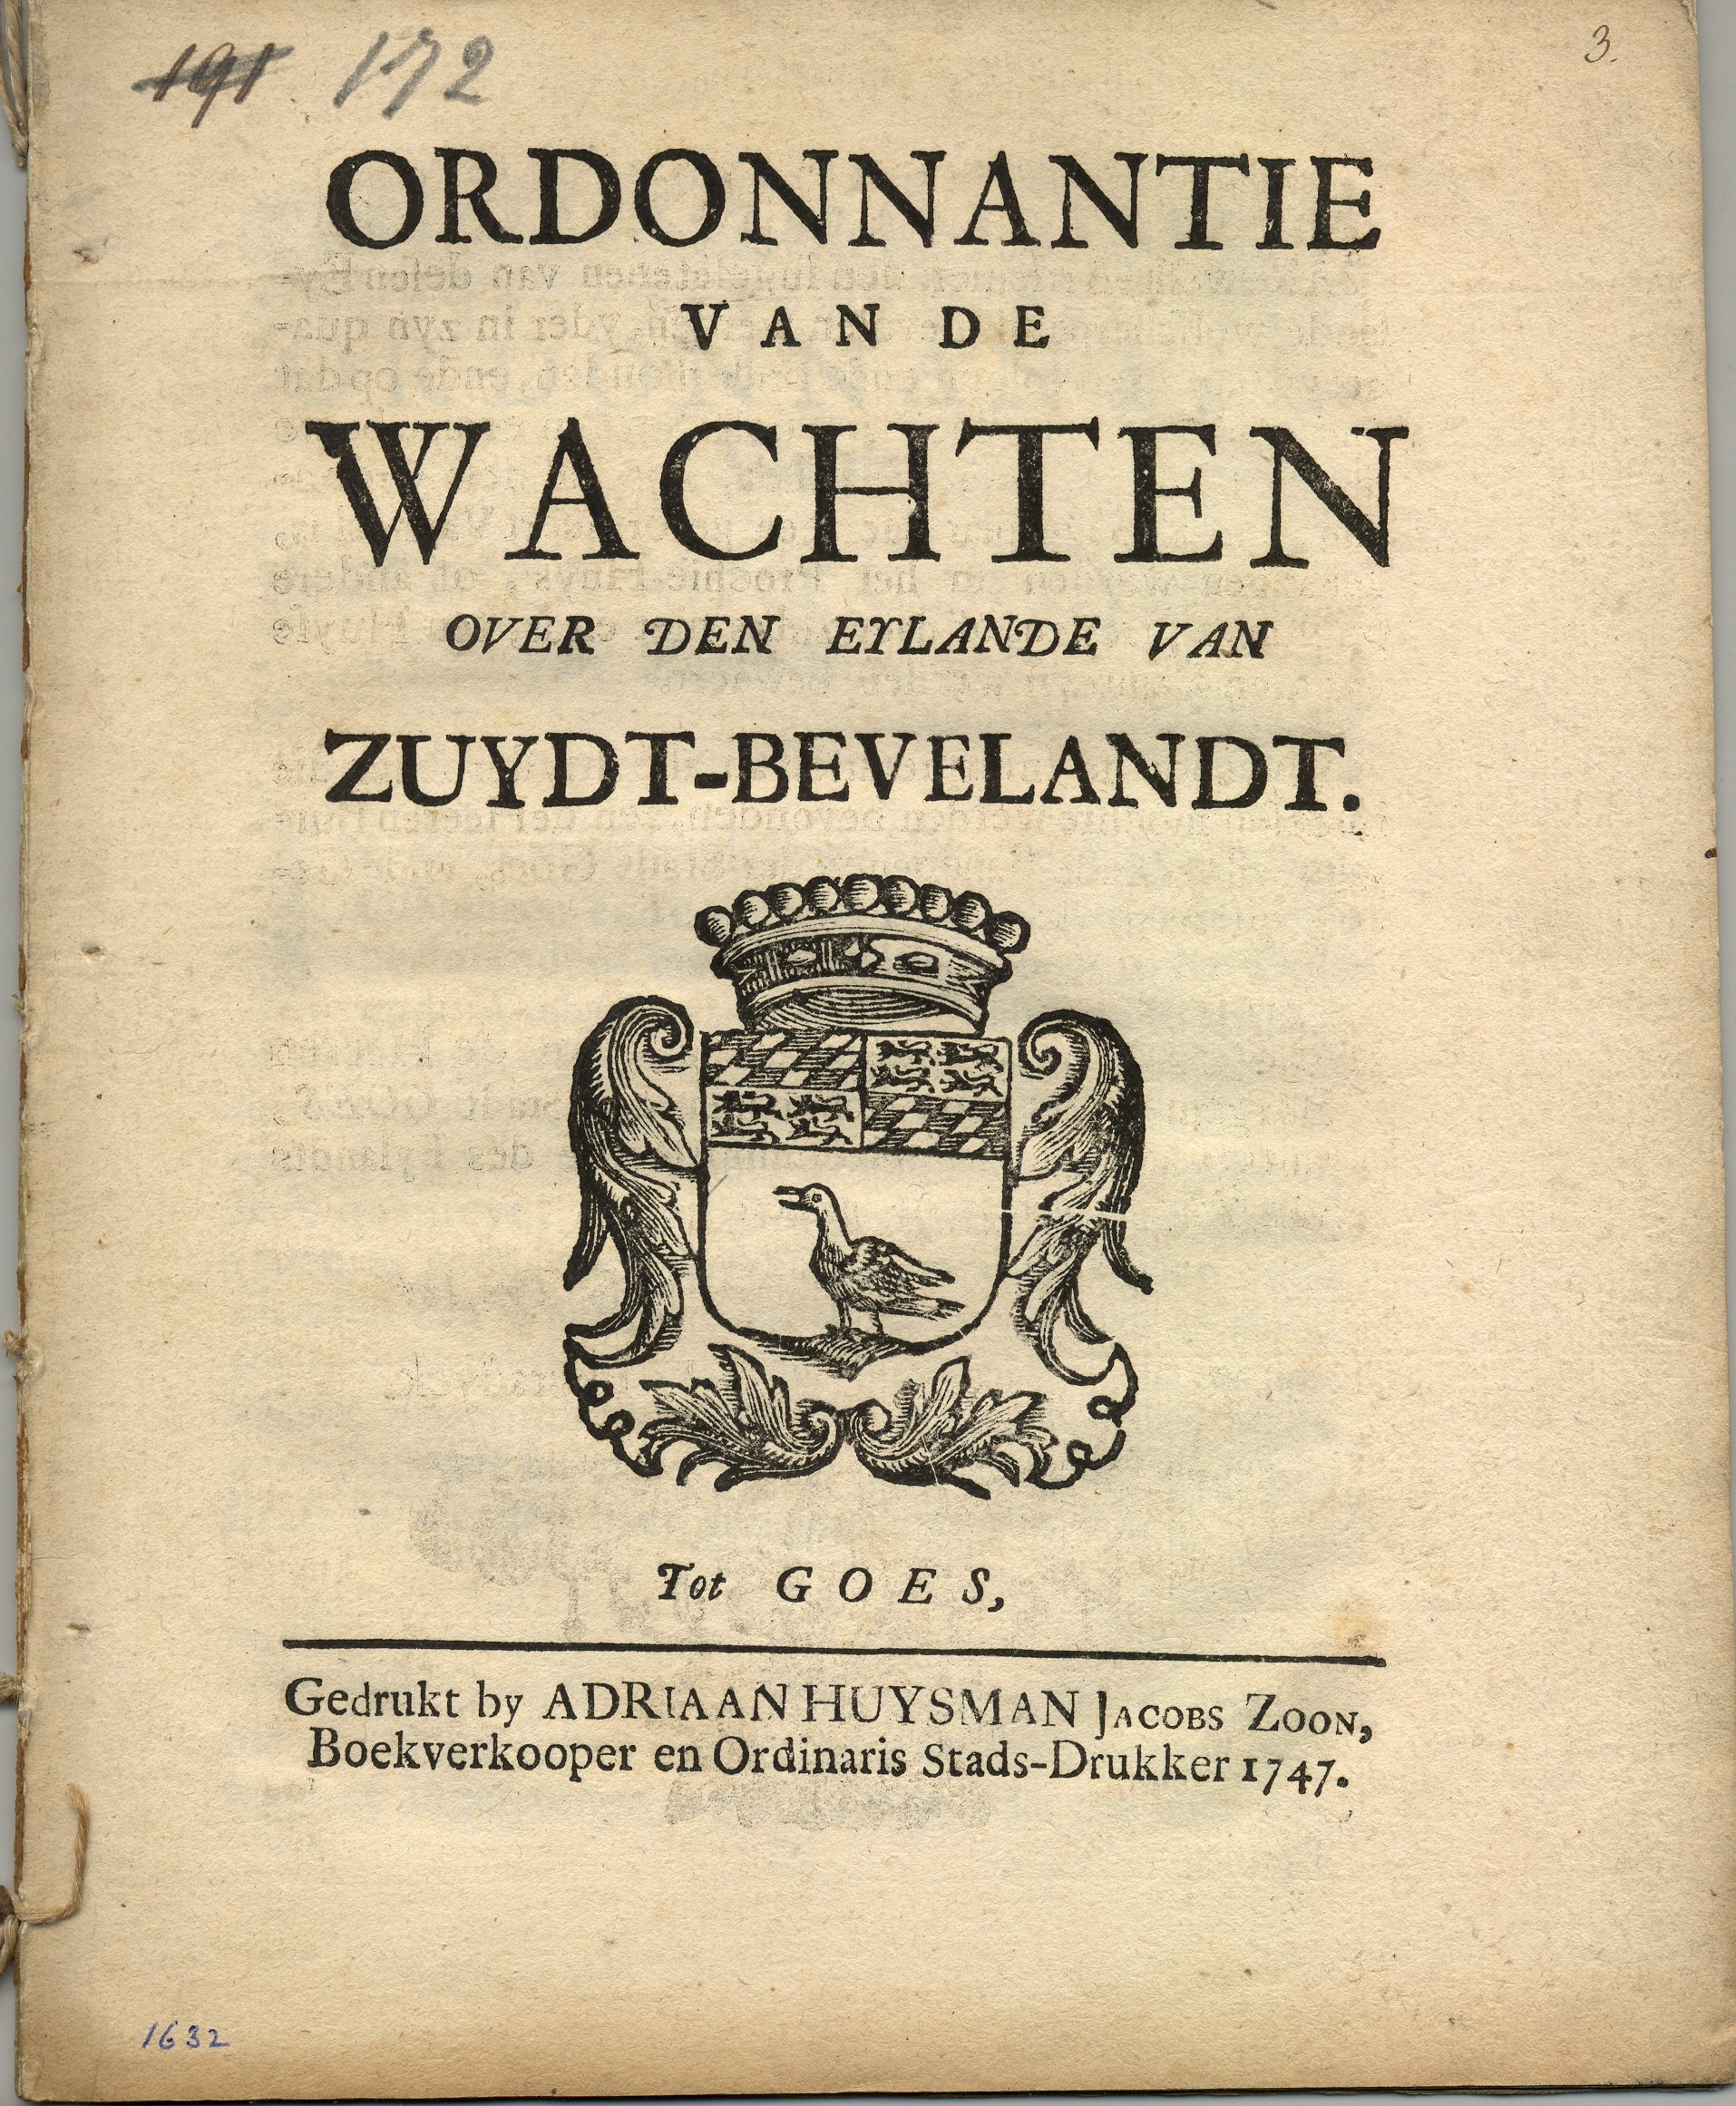 Ordonnantie op de landwacht van Zuid-Beveland, 1747.